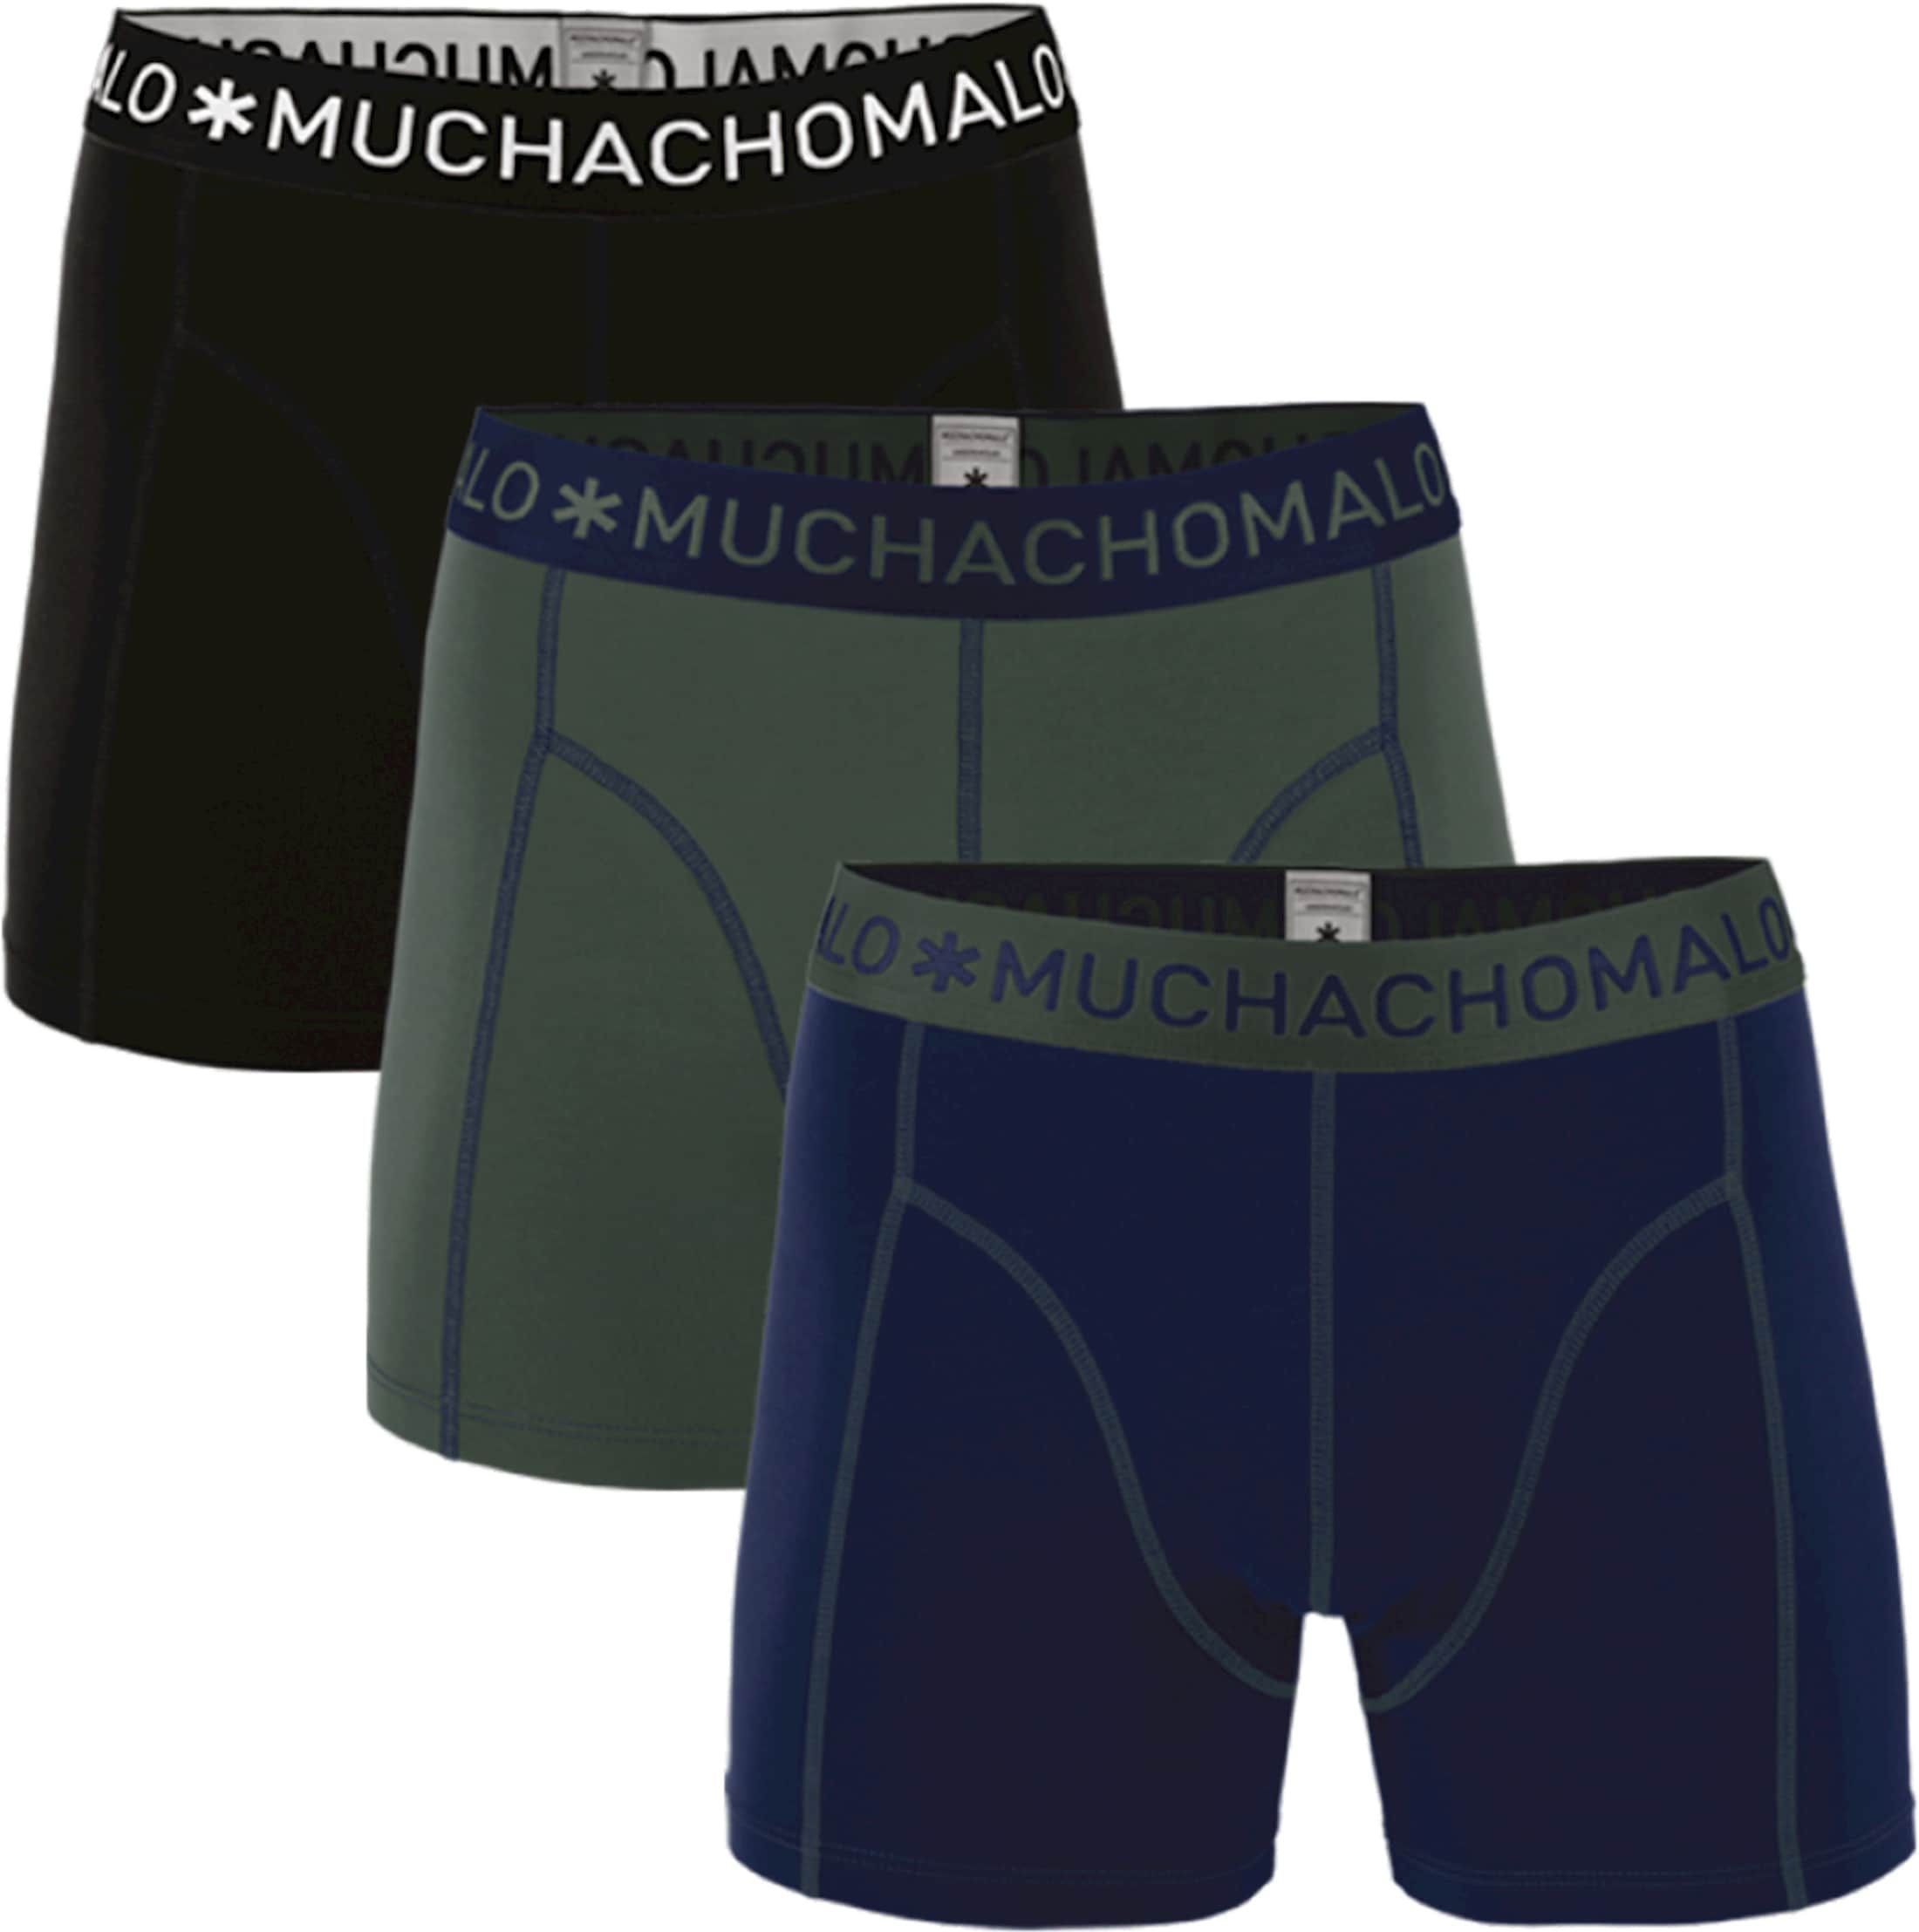 Muchachomalo Boxershorts 3-Pack 186 Black Dark Blue Dark Green Blue Green size M